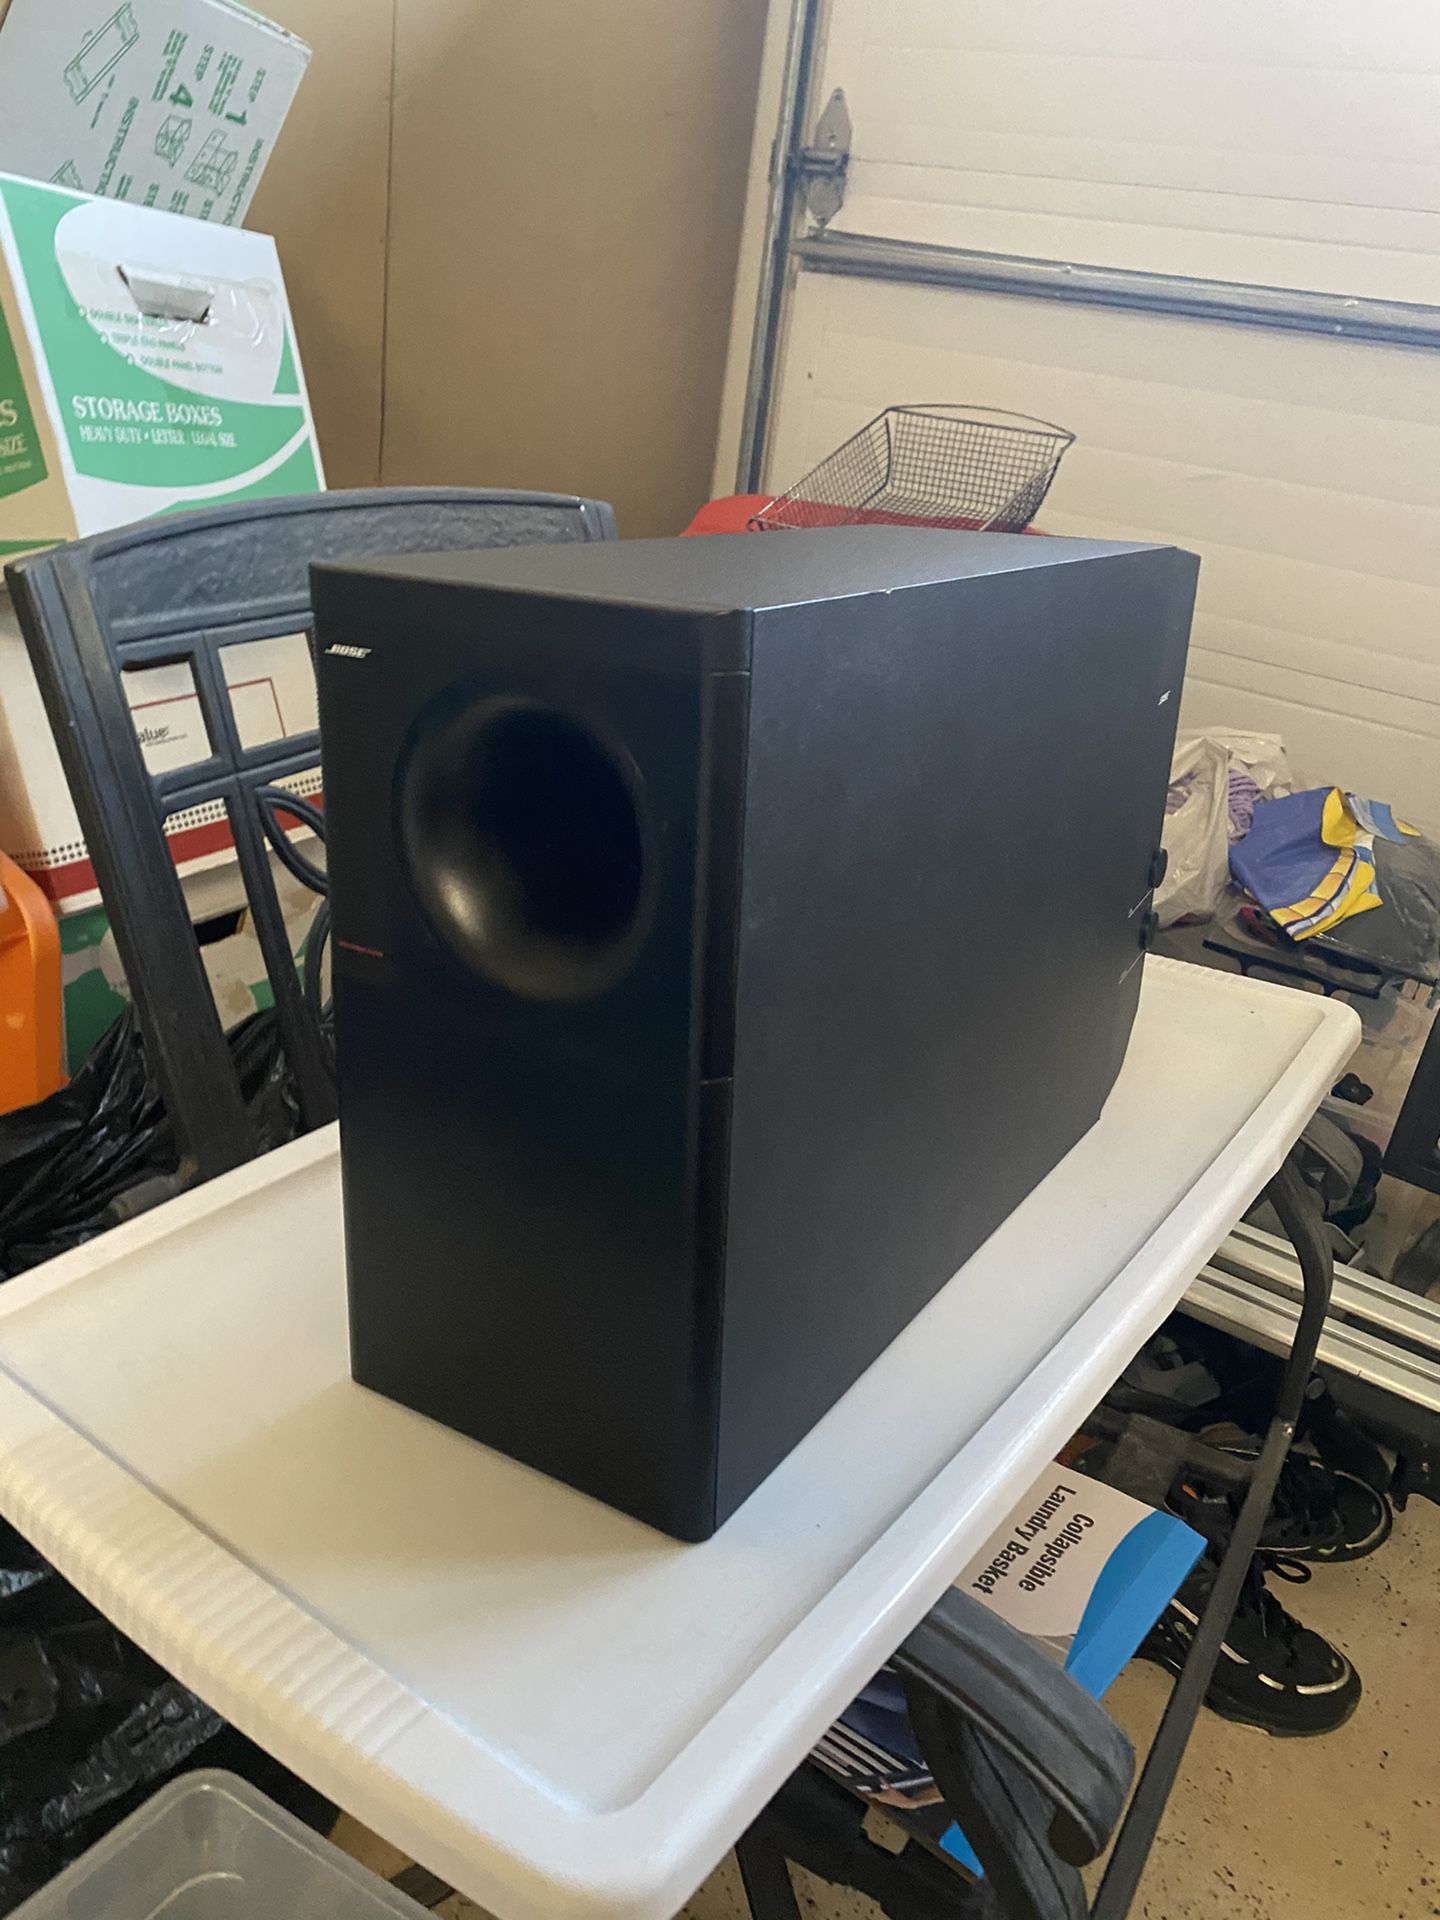 Bose Surround Sound Subwoofer & Speakers $400 for All, Sub needs repair, $1,000 original